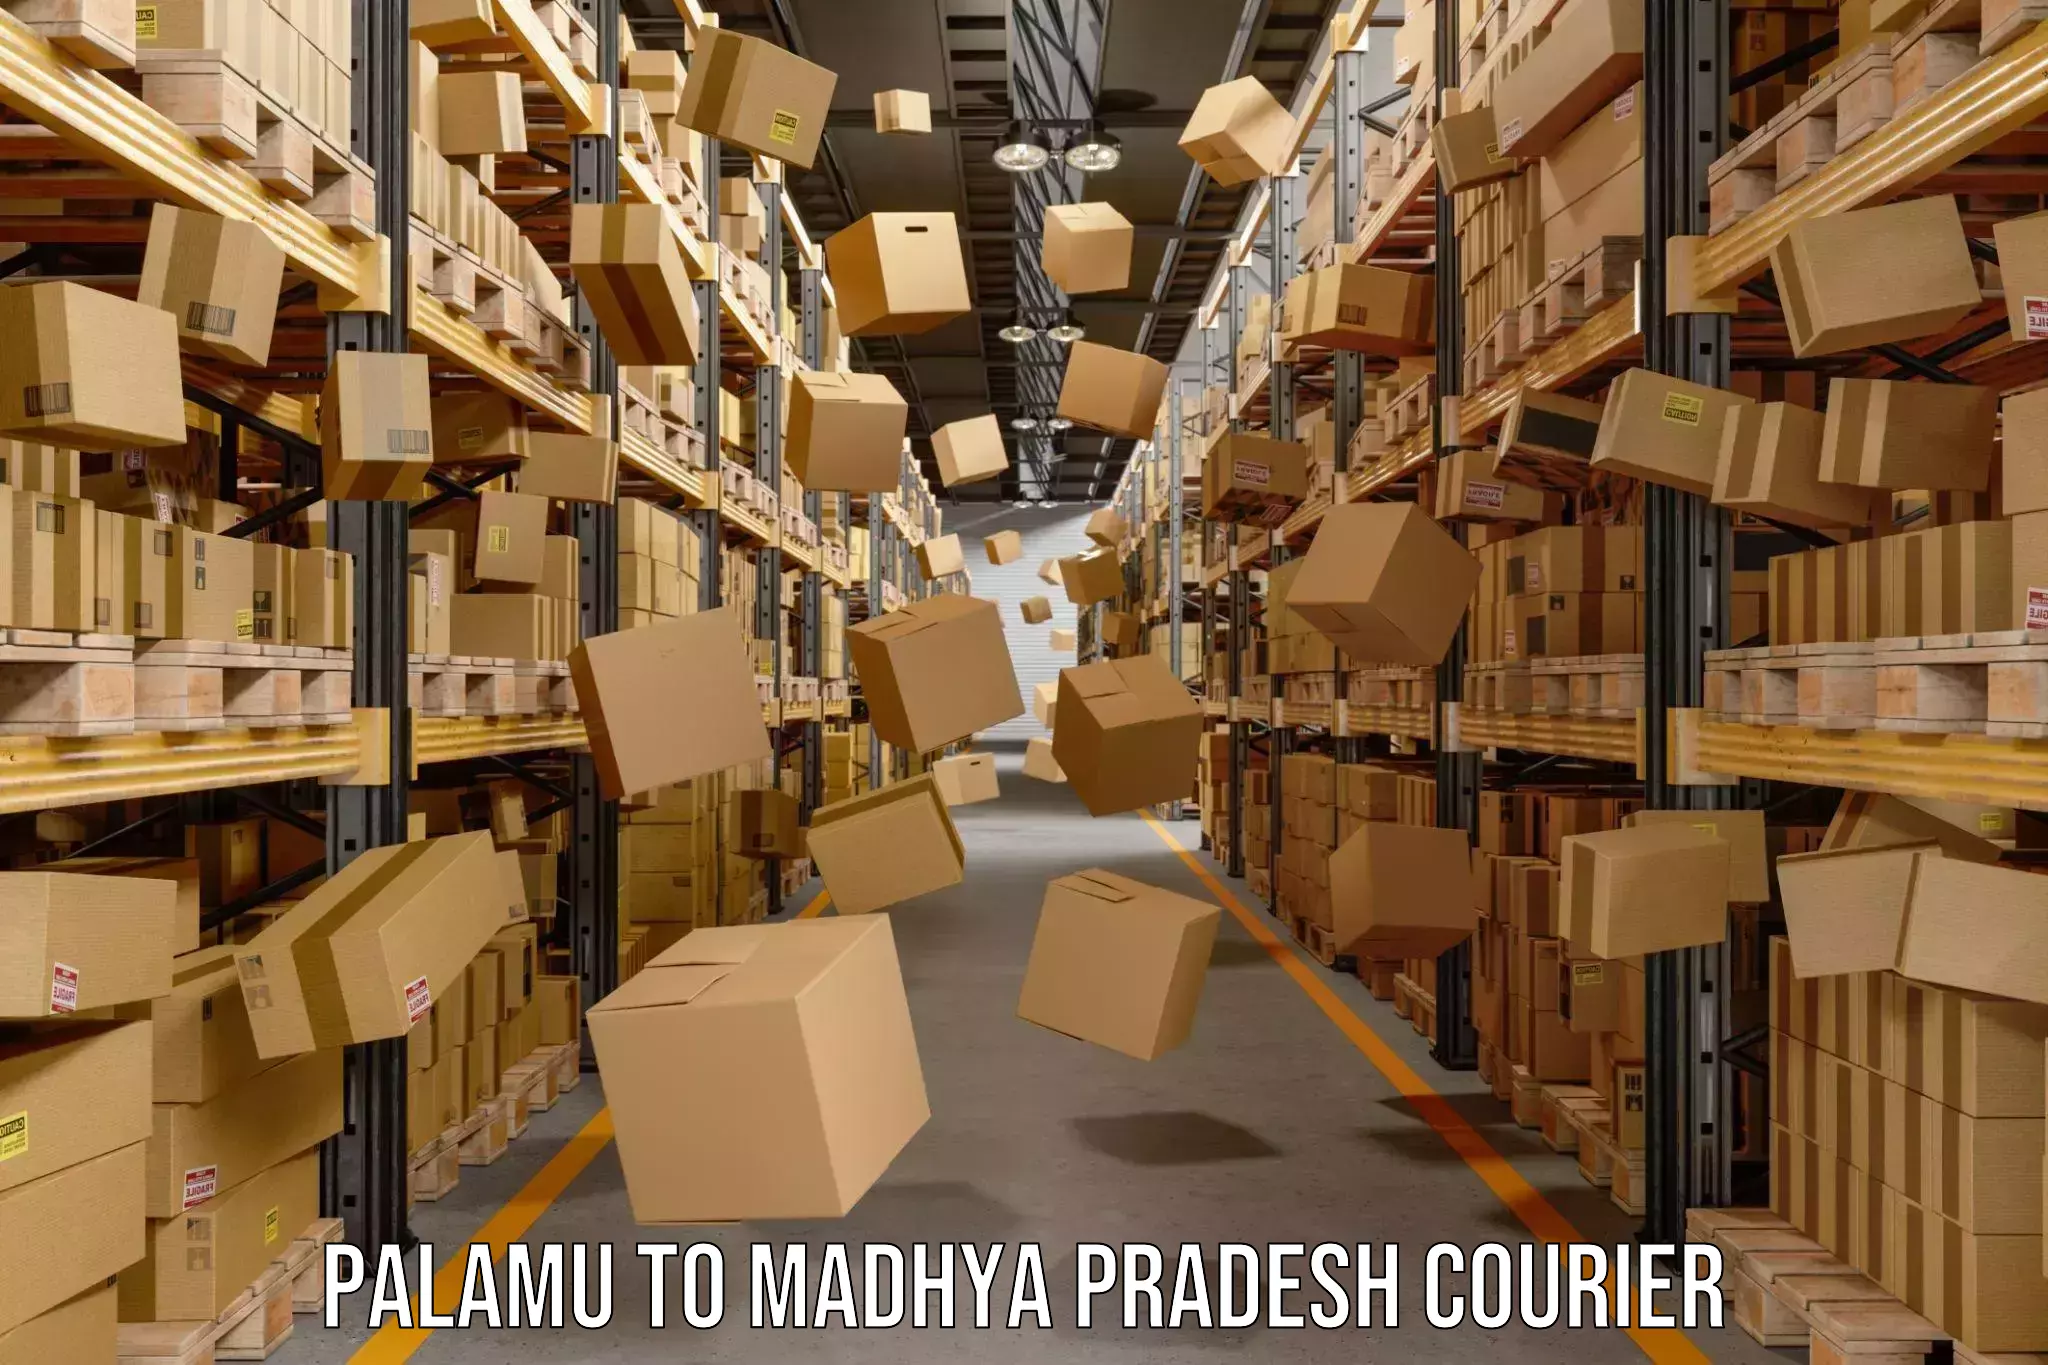 Pharmaceutical courier Palamu to Madhya Pradesh